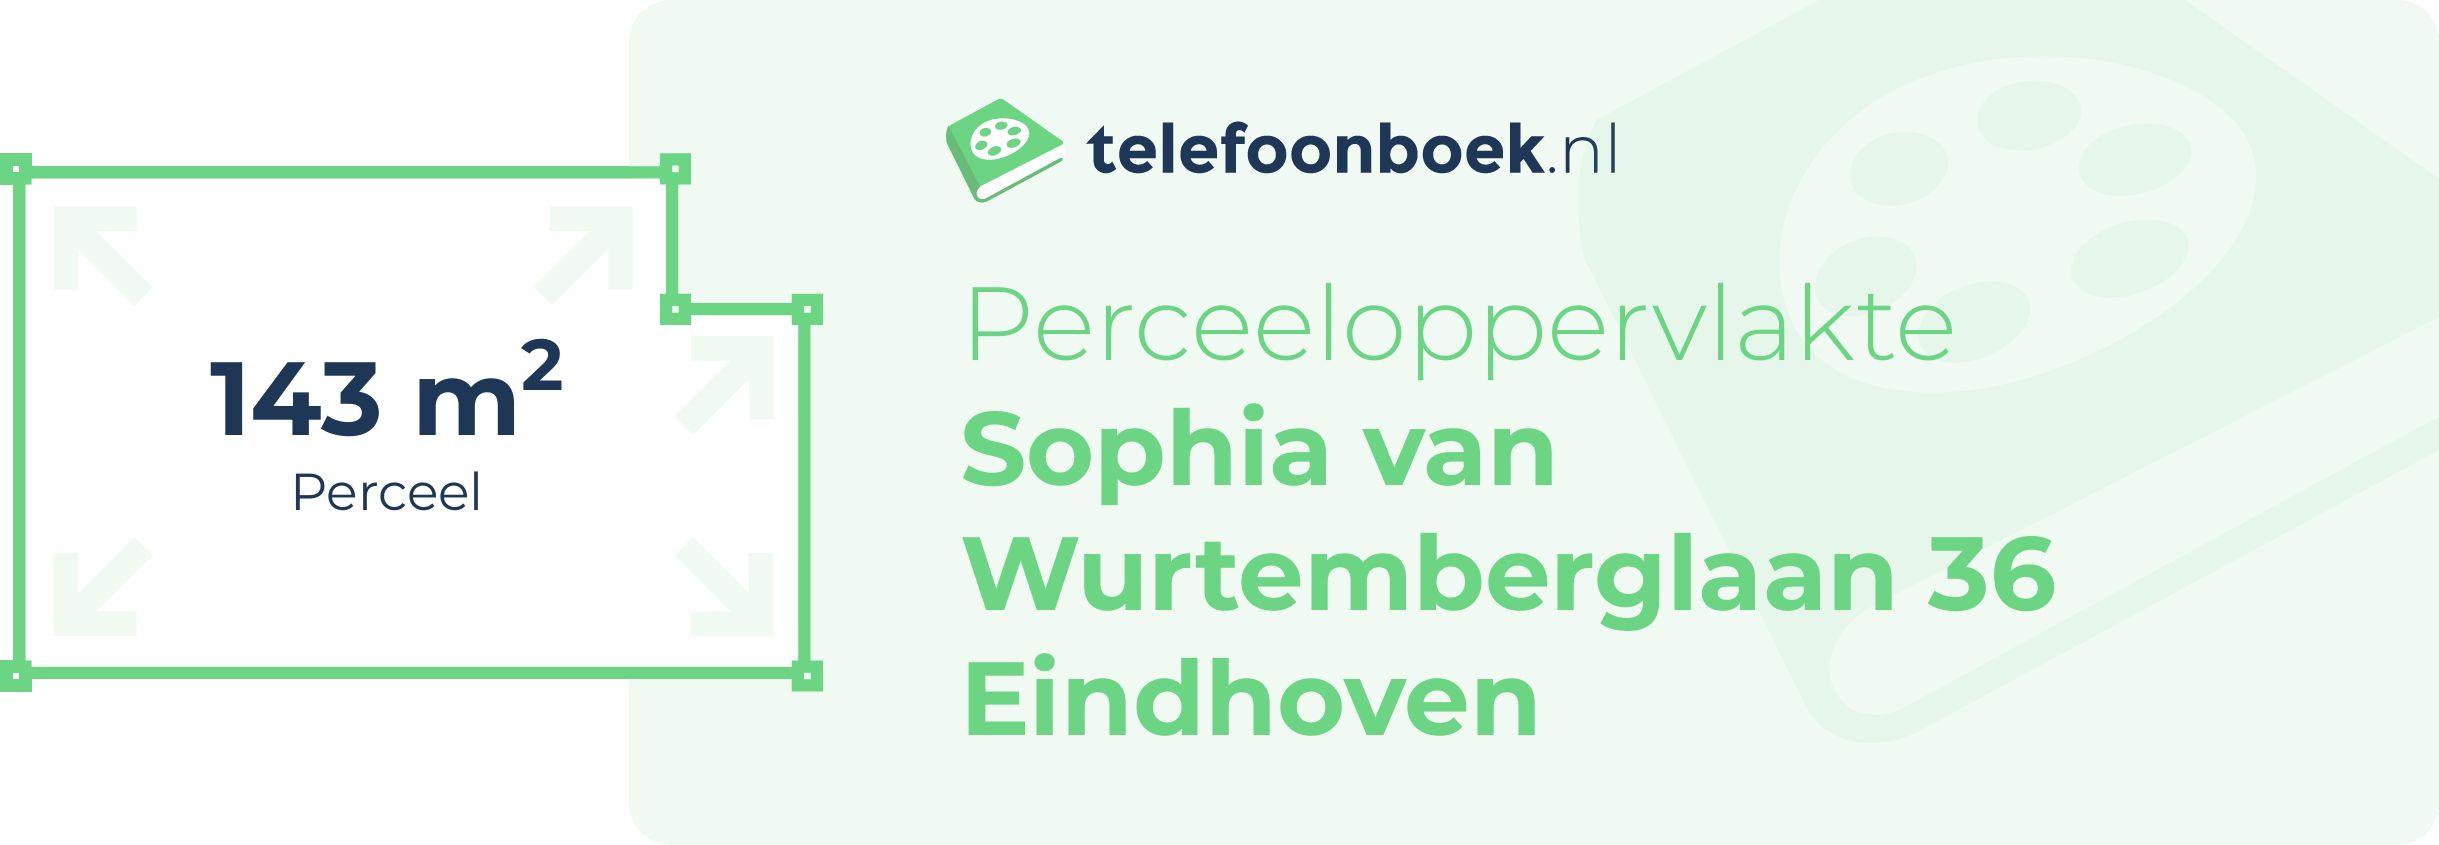 Perceeloppervlakte Sophia Van Wurtemberglaan 36 Eindhoven